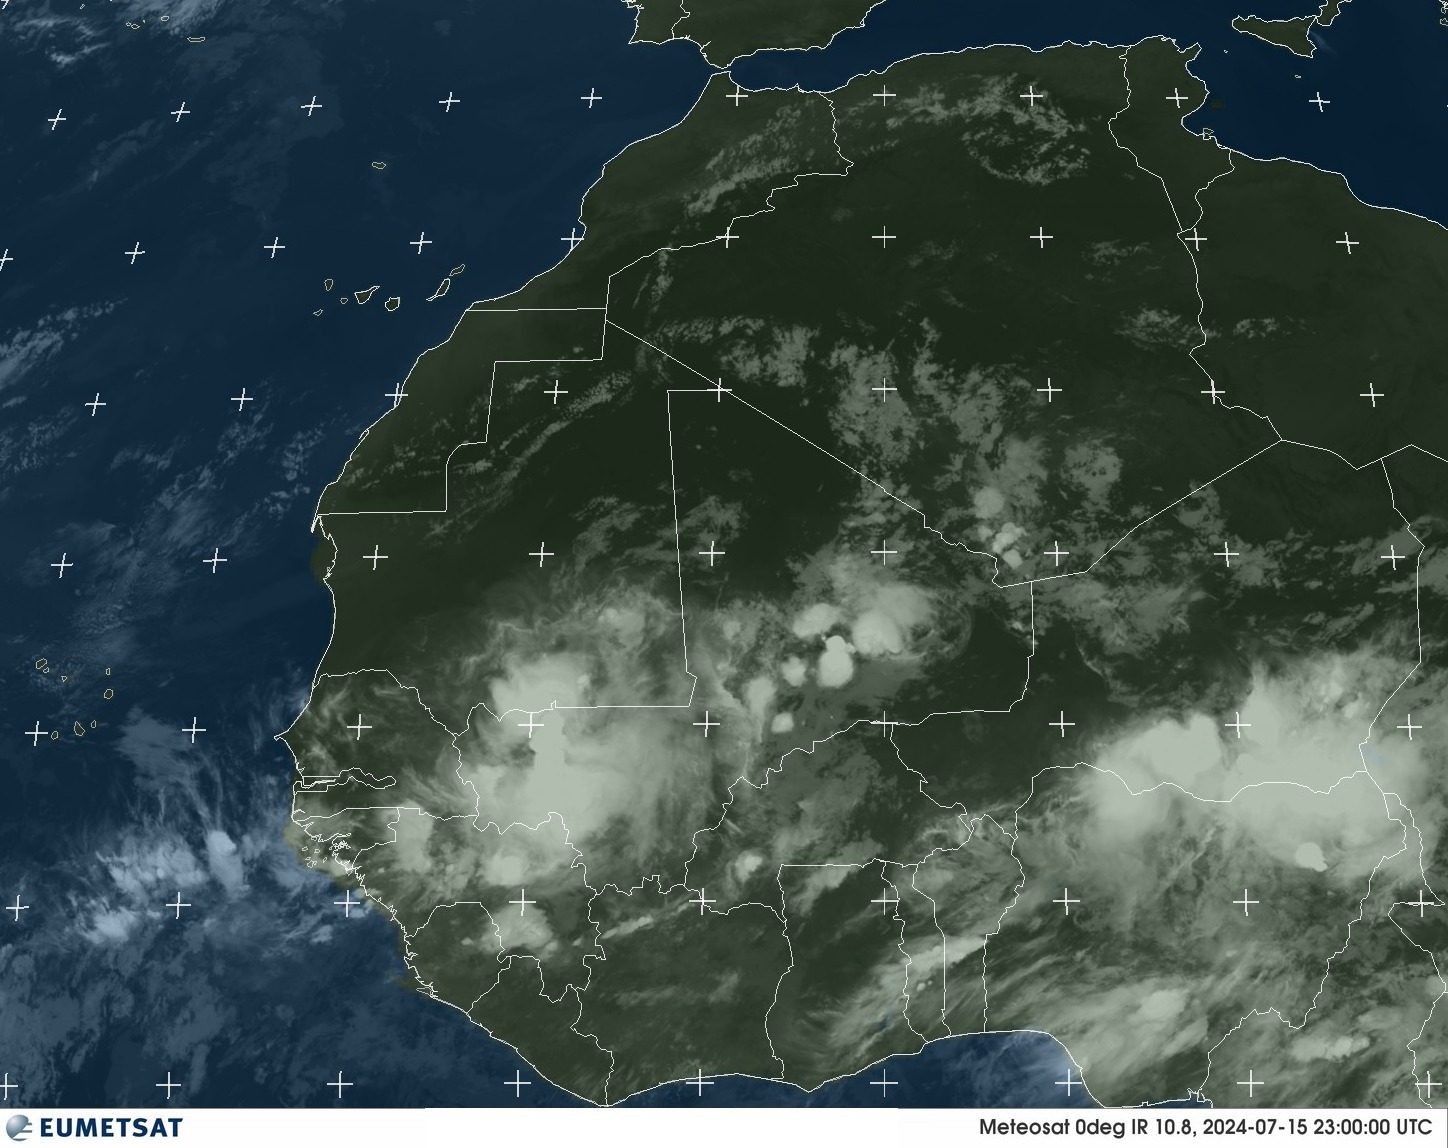 Satellite - Gulf of Guinea - Tu, 16 Jul, 01:00 BST